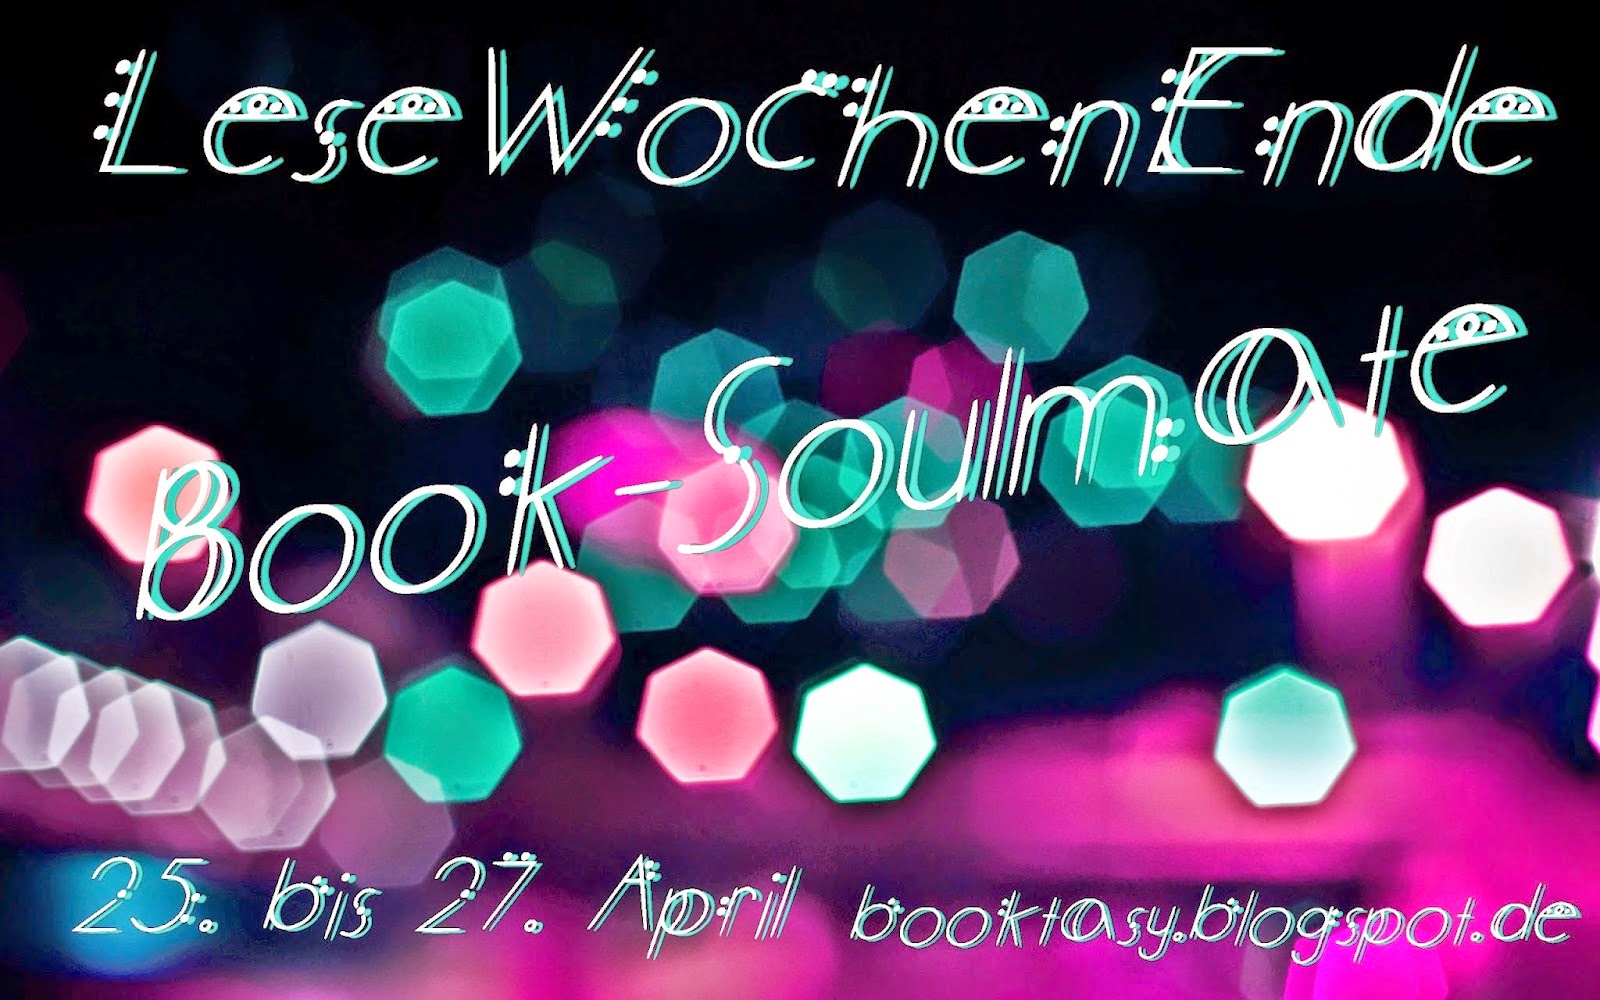 http://booktasy.blogspot.de/2014/04/booksoulmate-fragen-und-aufgaben.html